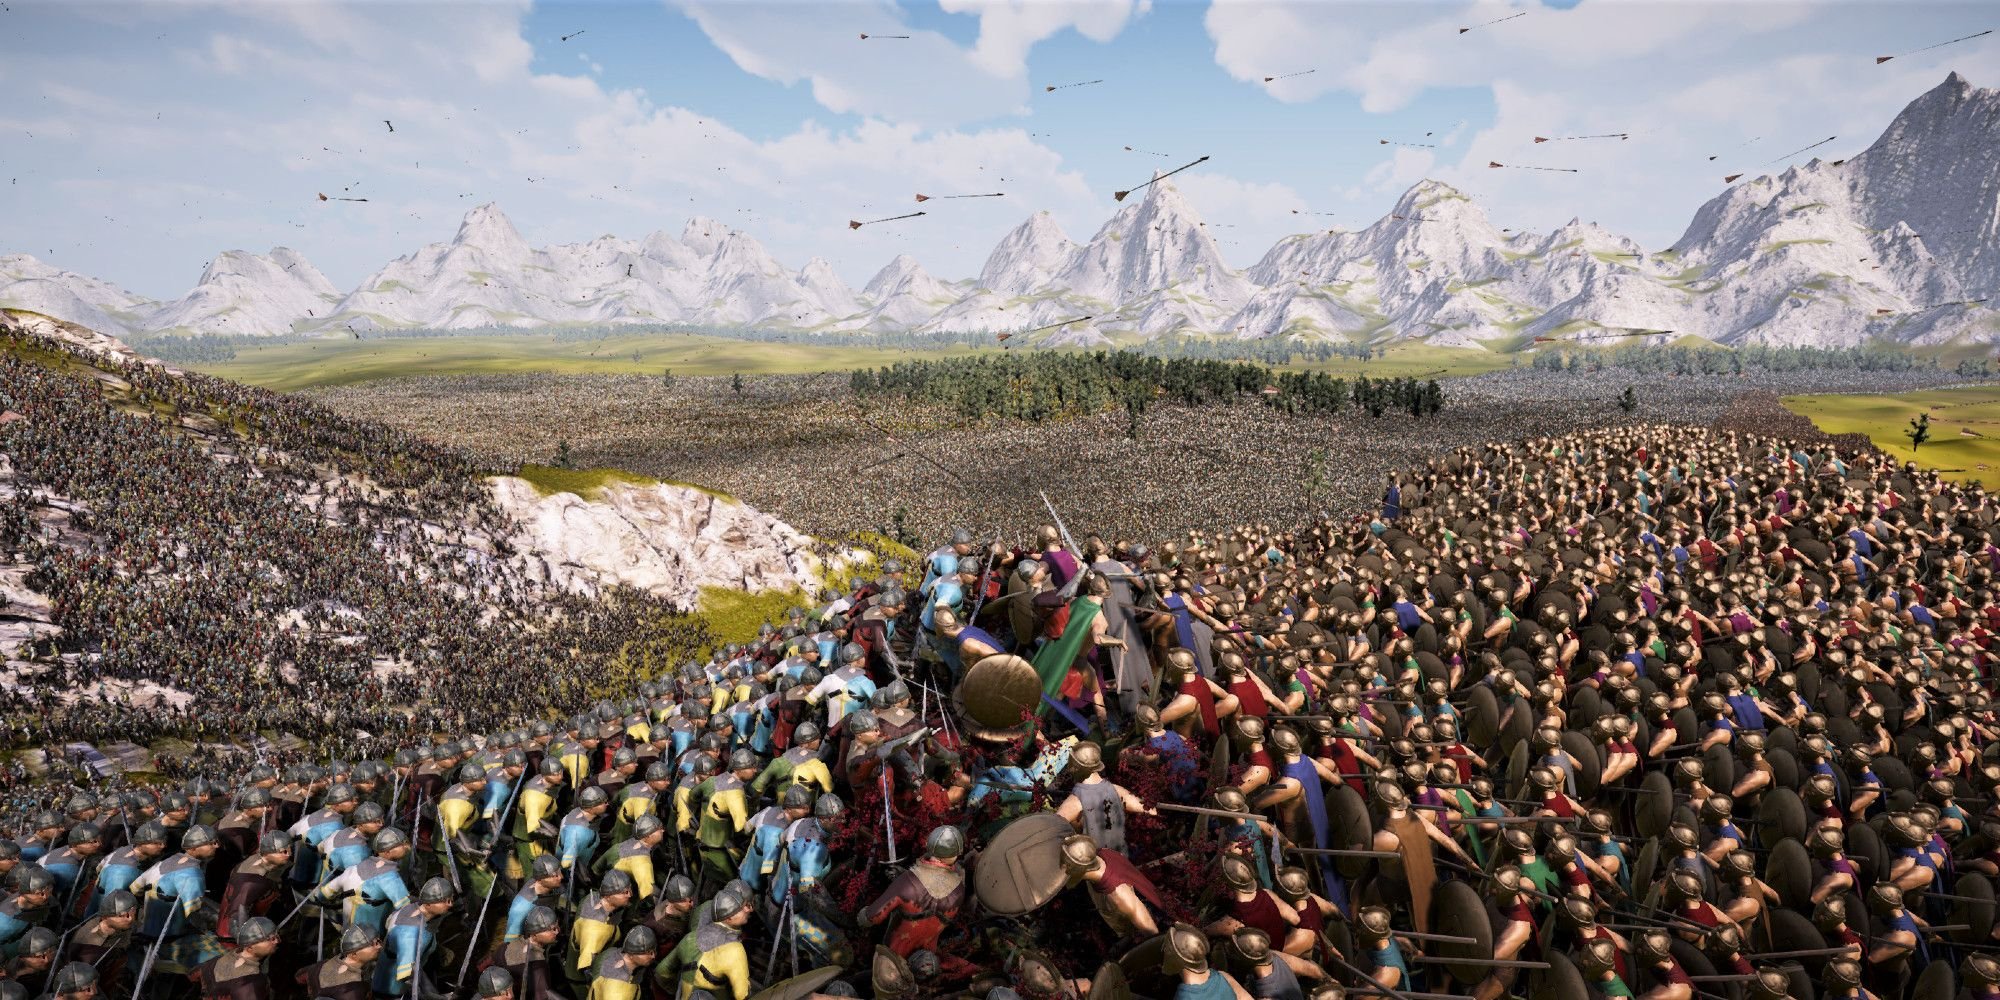 El video del simulador de batalla muestra 1 millón de zombis contra el ejército medieval